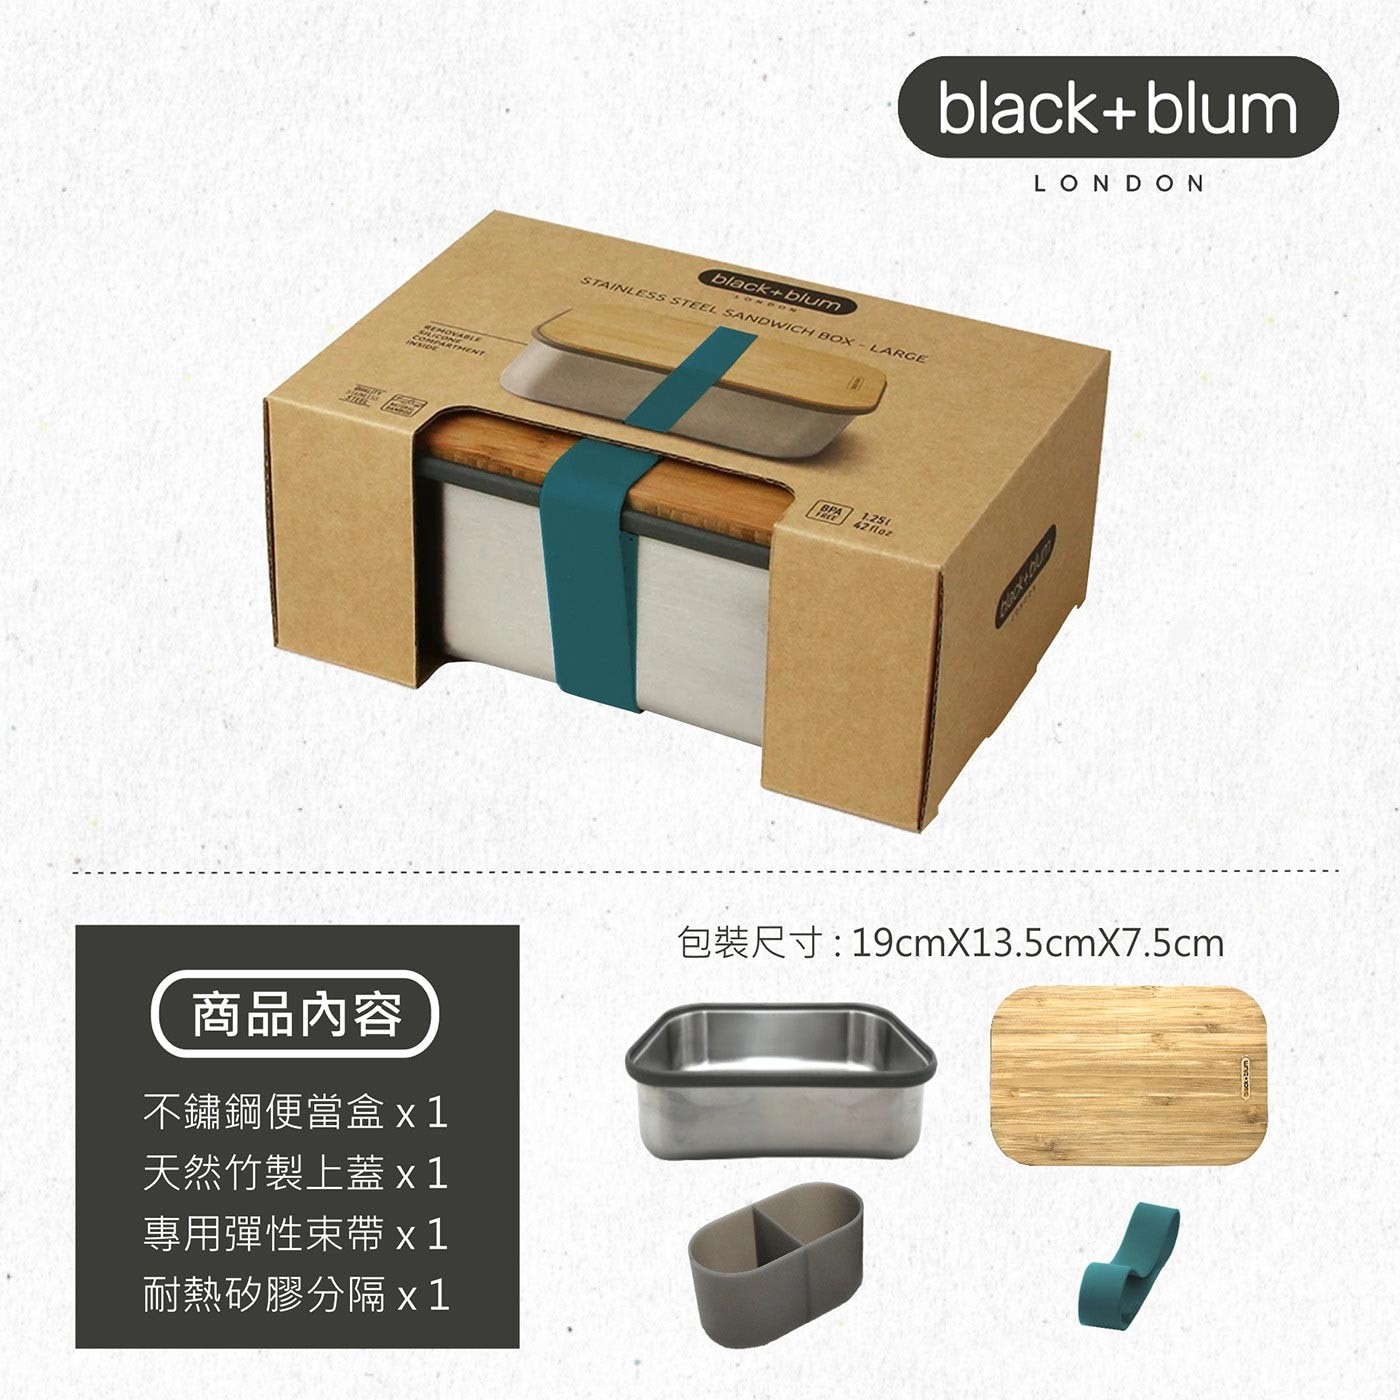 英國black+blum不鏽鋼輕食盒1250毫升含矽膠分隔-海水藍，304不鏽鋼盒身、耐熱矽膠束帶邊條，高品質天然竹製上蓋，耐切割，能作為托盤使用，矽膠耐熱好清洗。